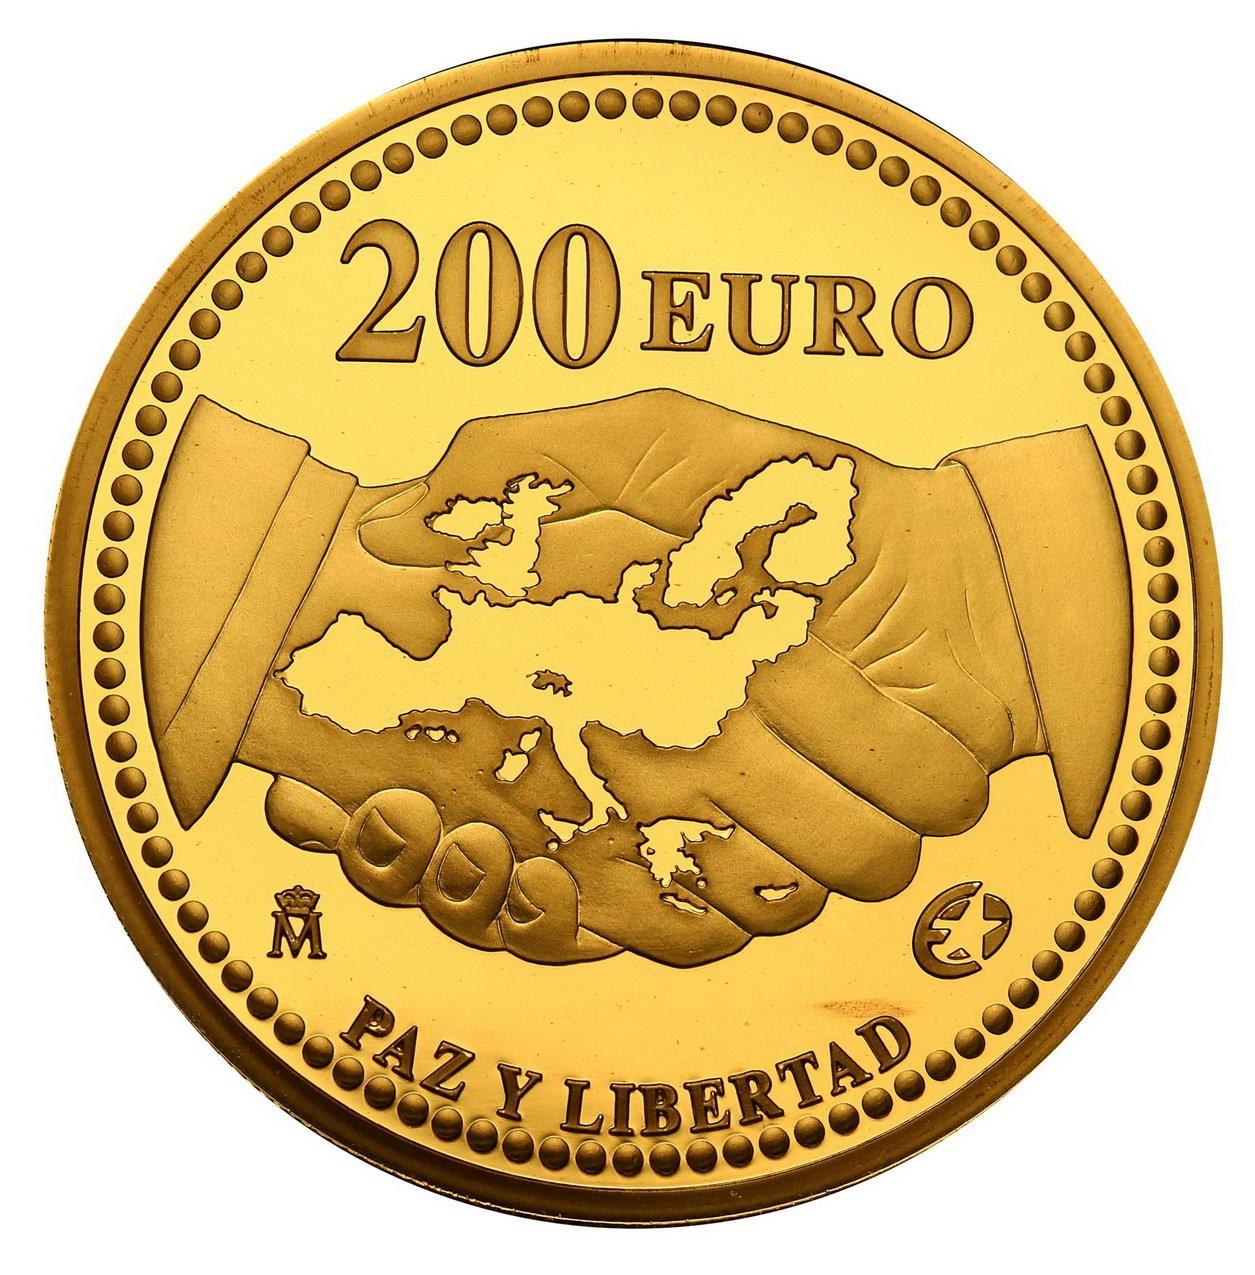 Hiszpania. 200 Euro 2005 Program Europa - pokój i wolność